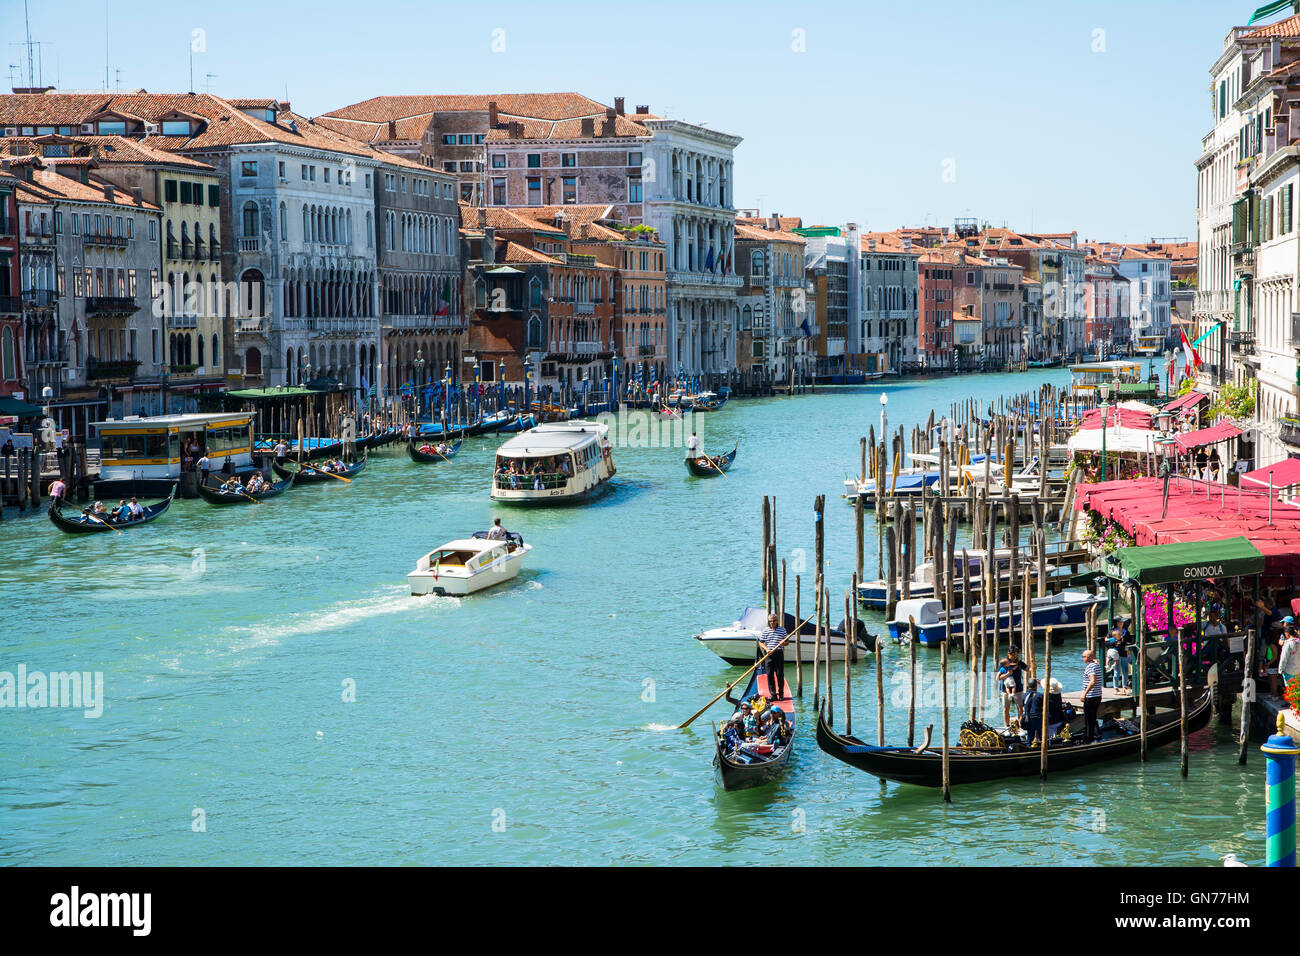 Venezia,Italy-August 17,2014:vista dall'altezza del canal grande con barca e gondole a Venezia durante un giorno d'estate. Foto Stock